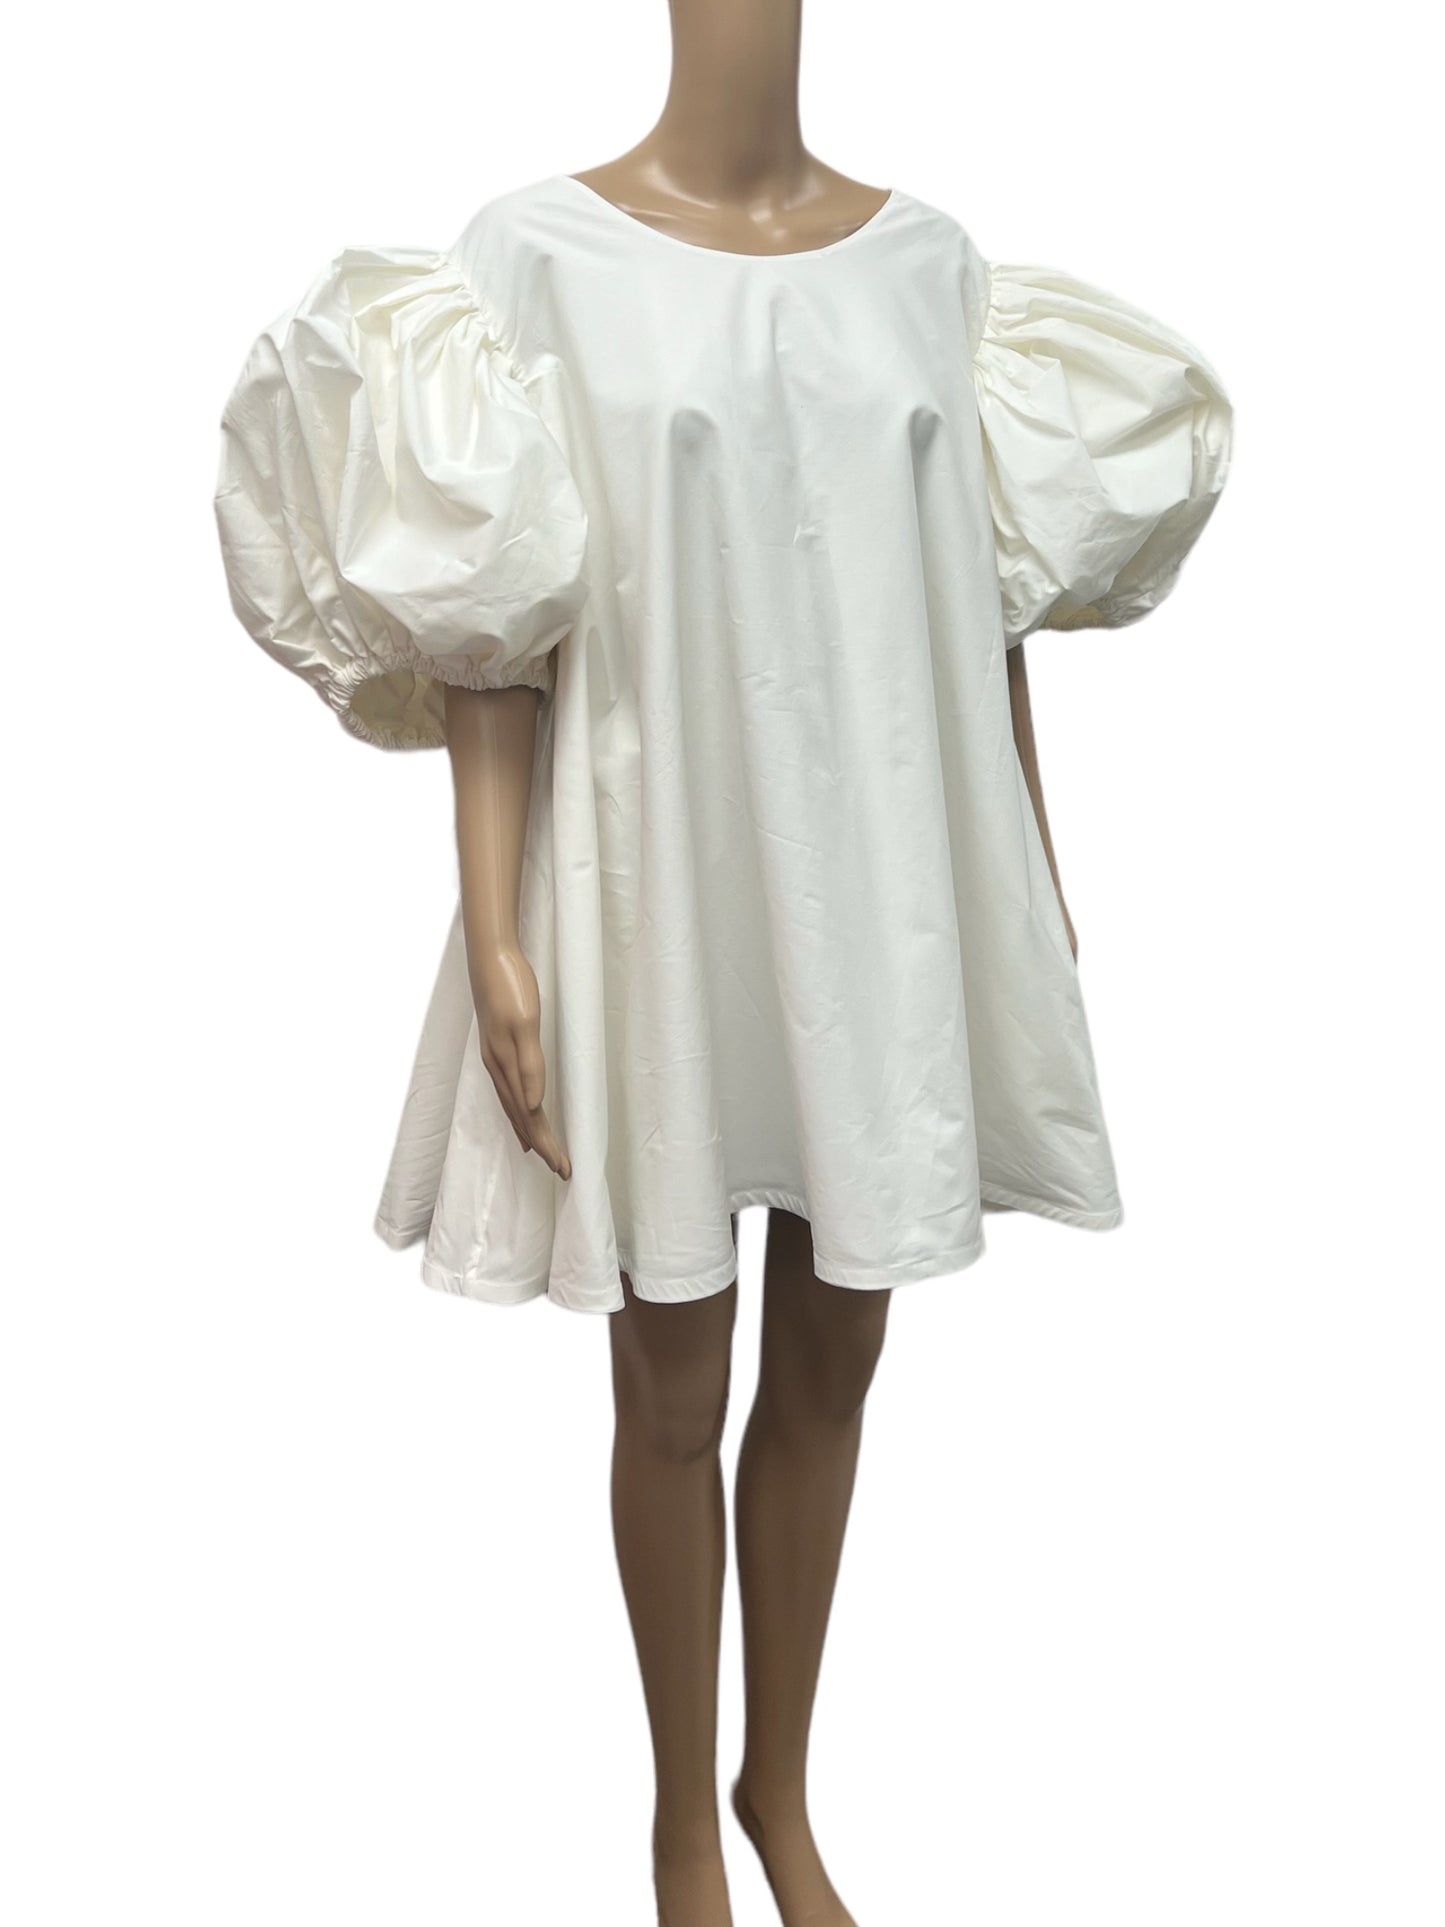 The Sophia Dress Sample in off-white